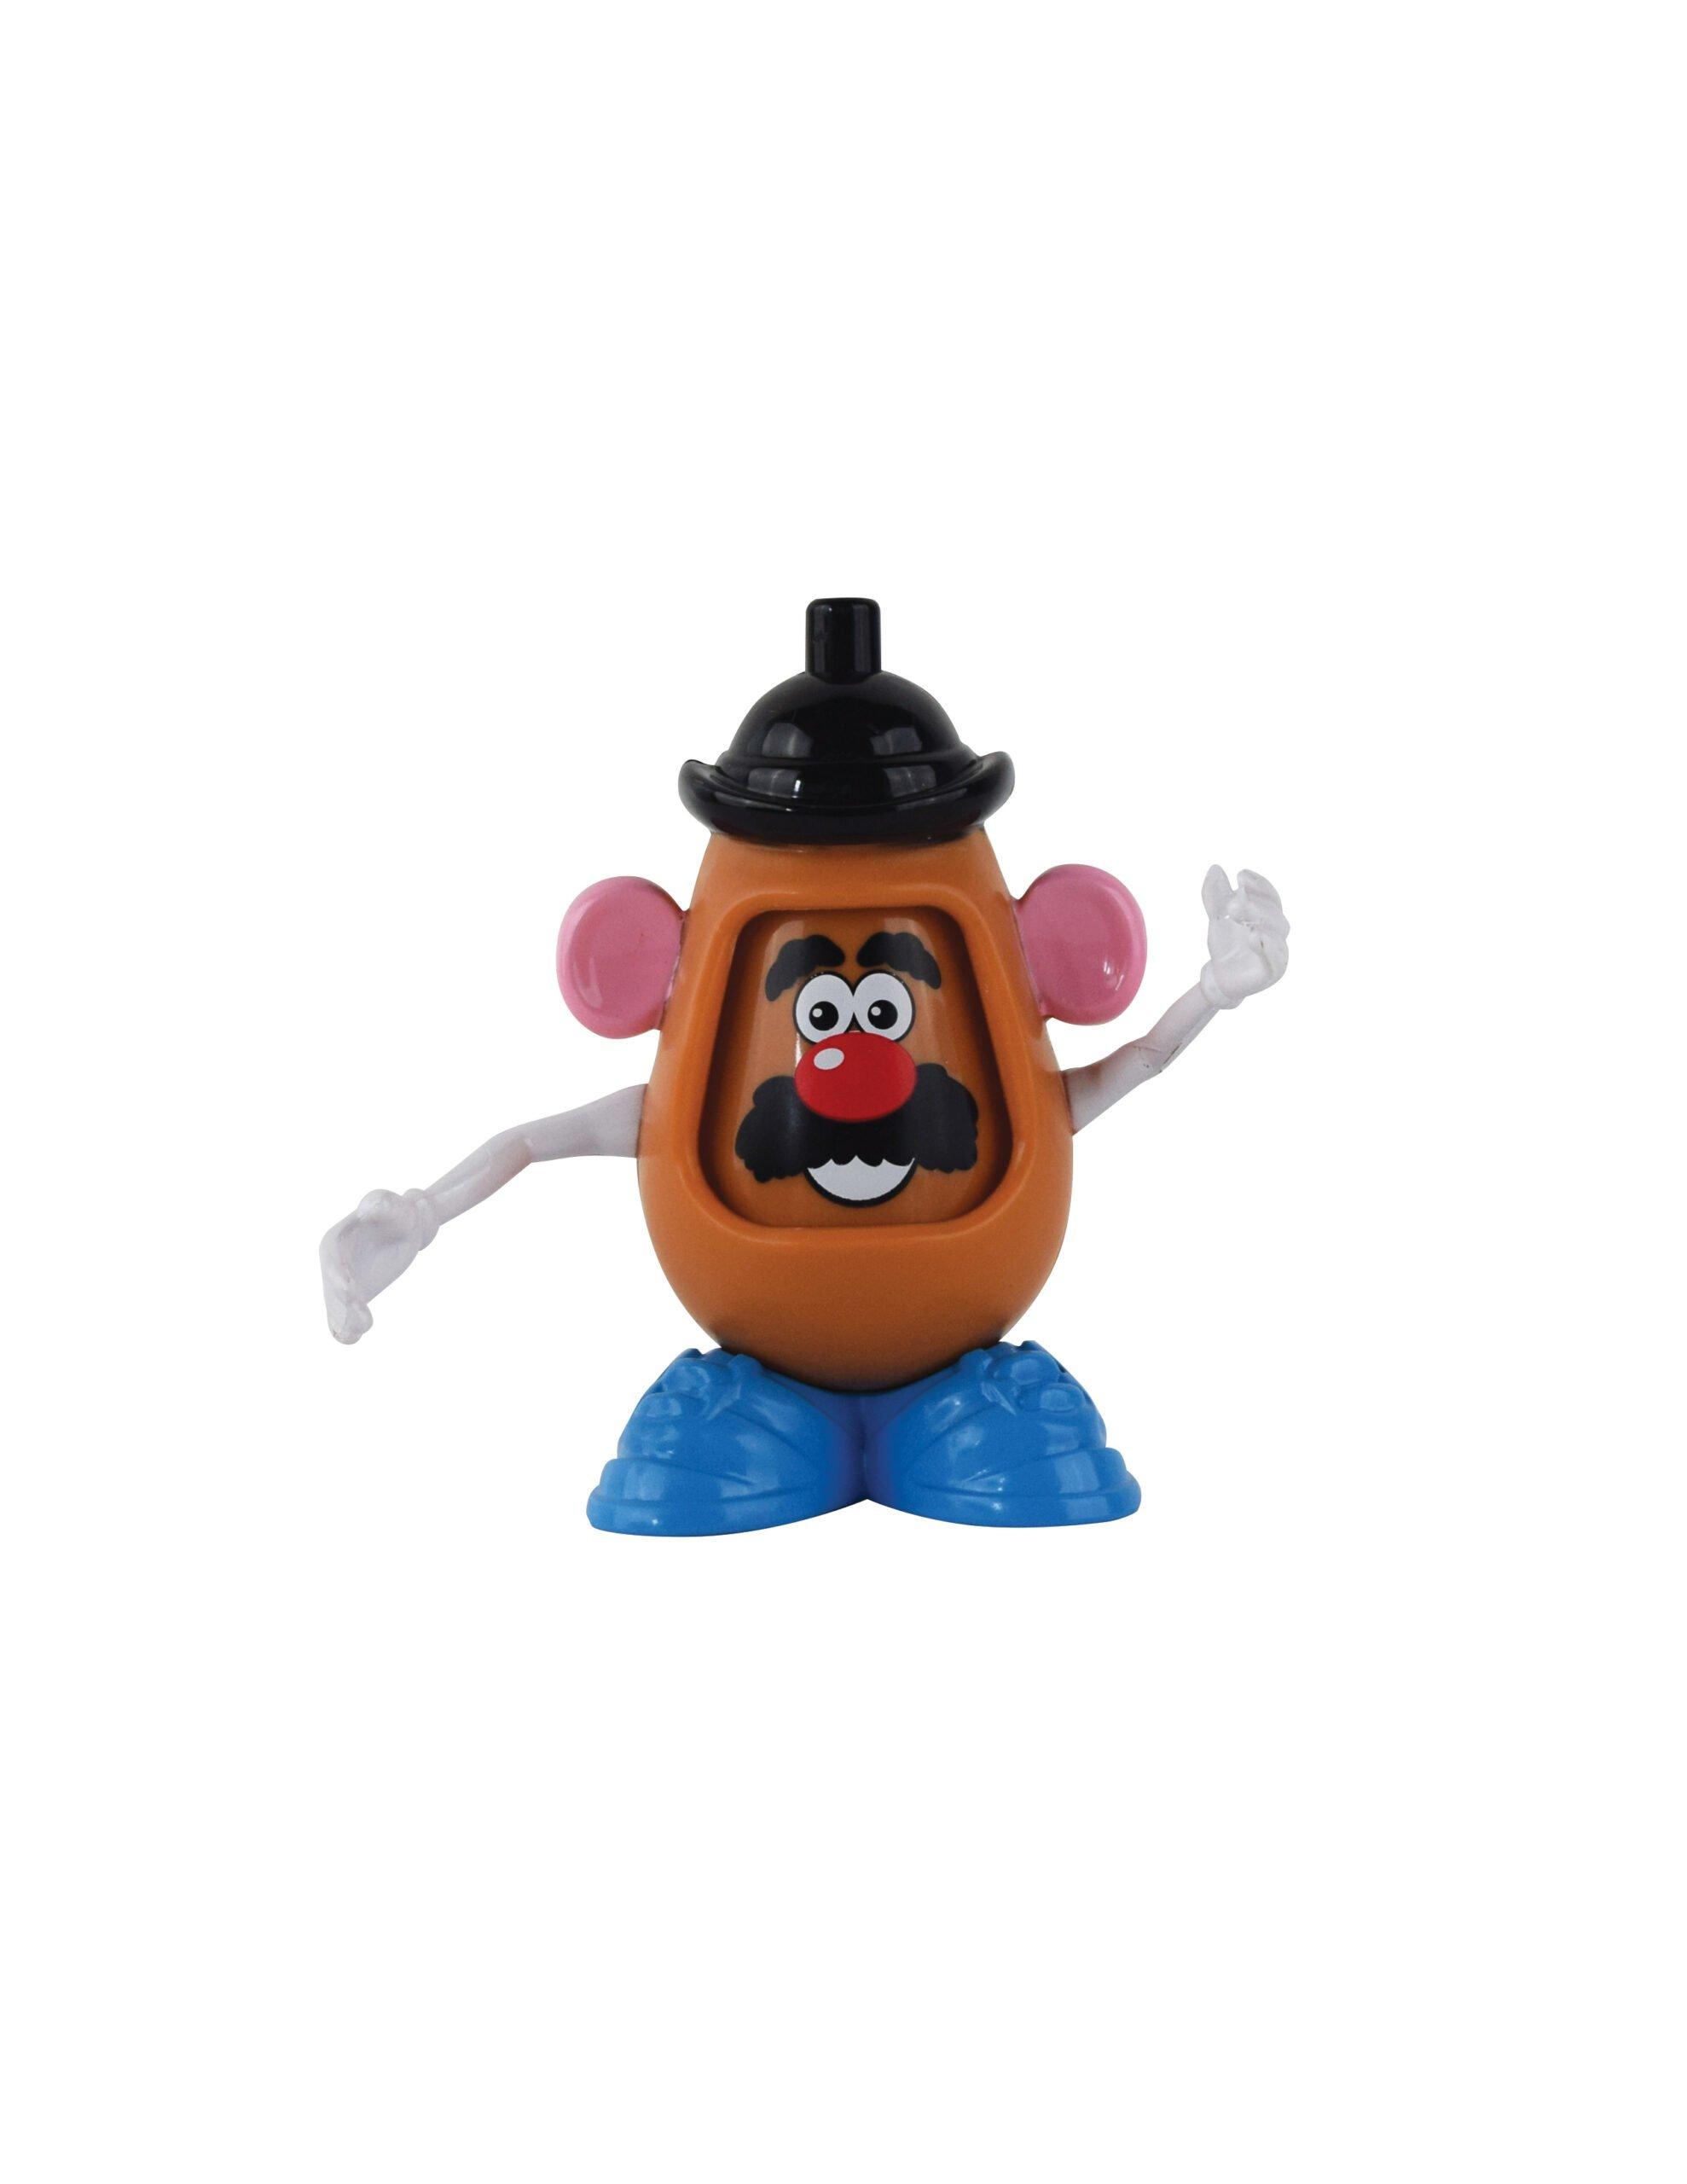 SUPER IMPULSE  Super Impulse World’s Smallest Mr. Potato Head 